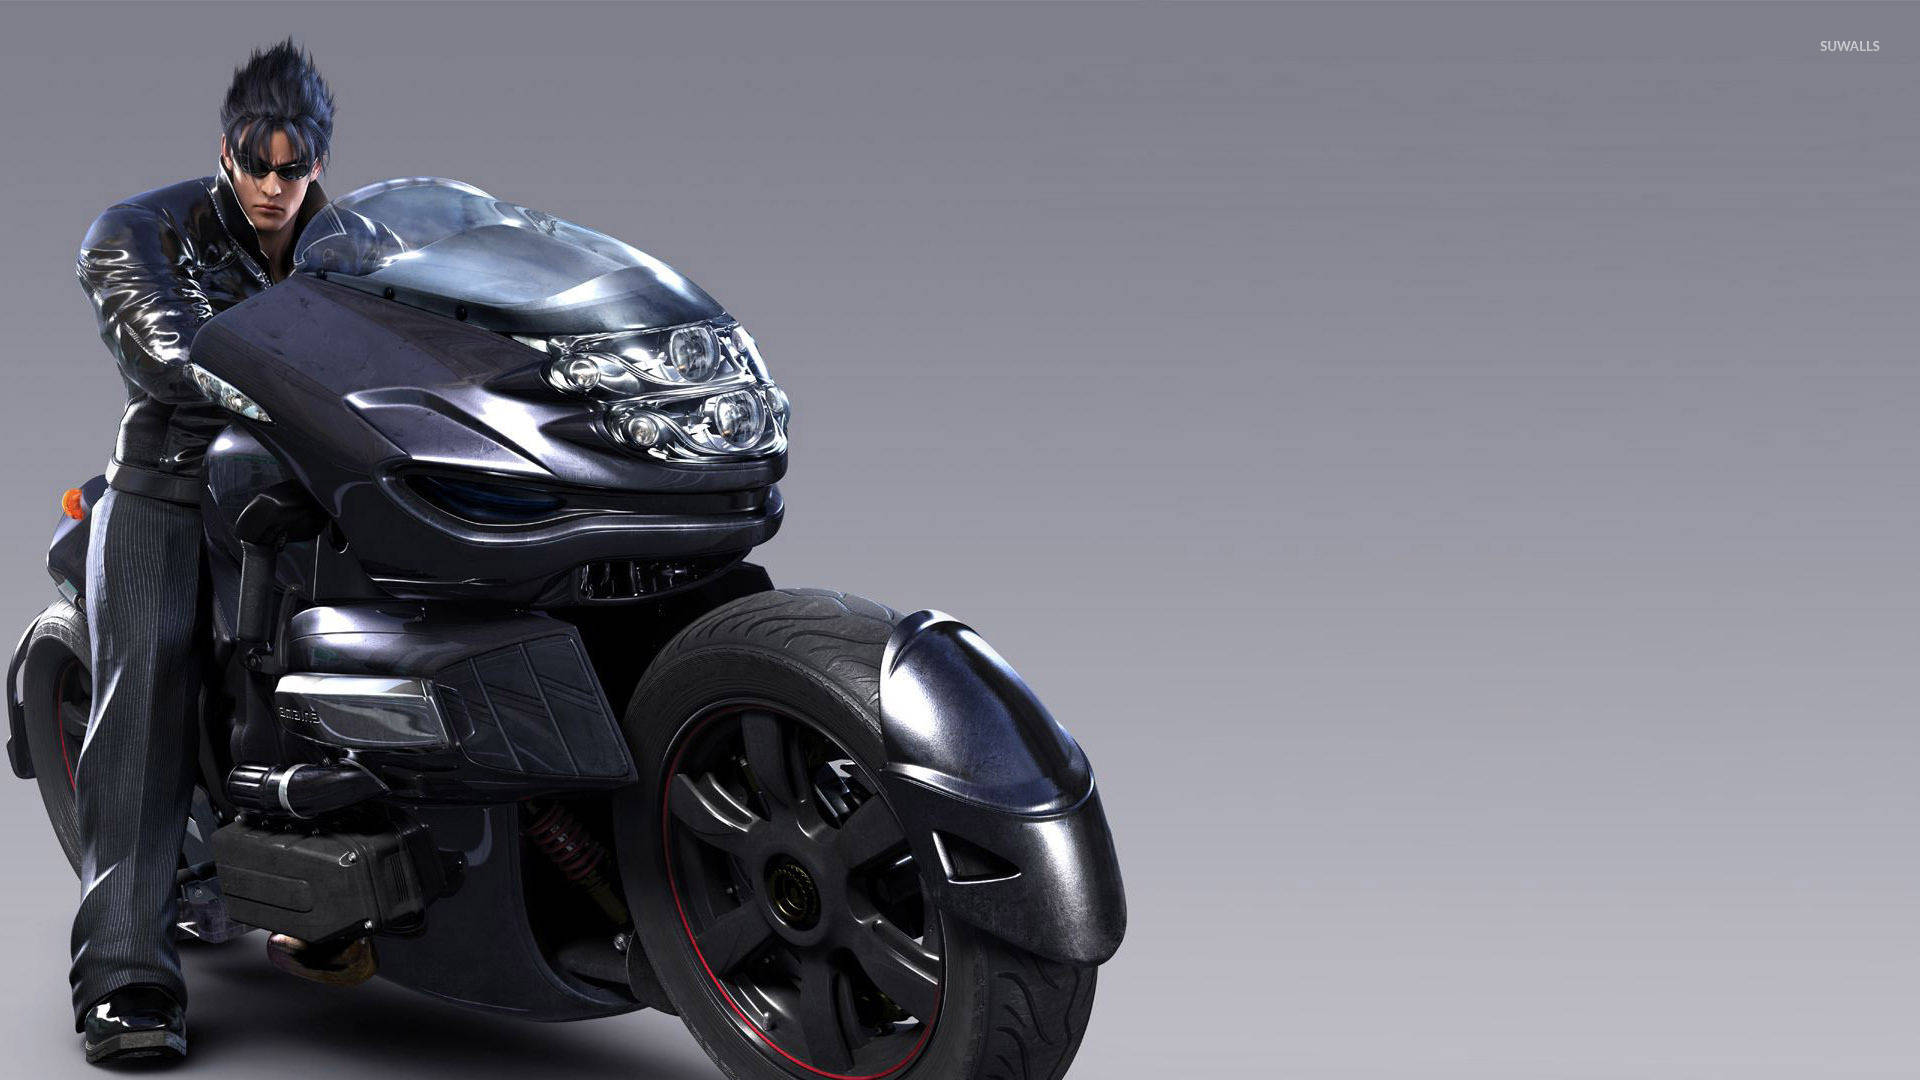 Jin Kazama In Black Motorcycle Background